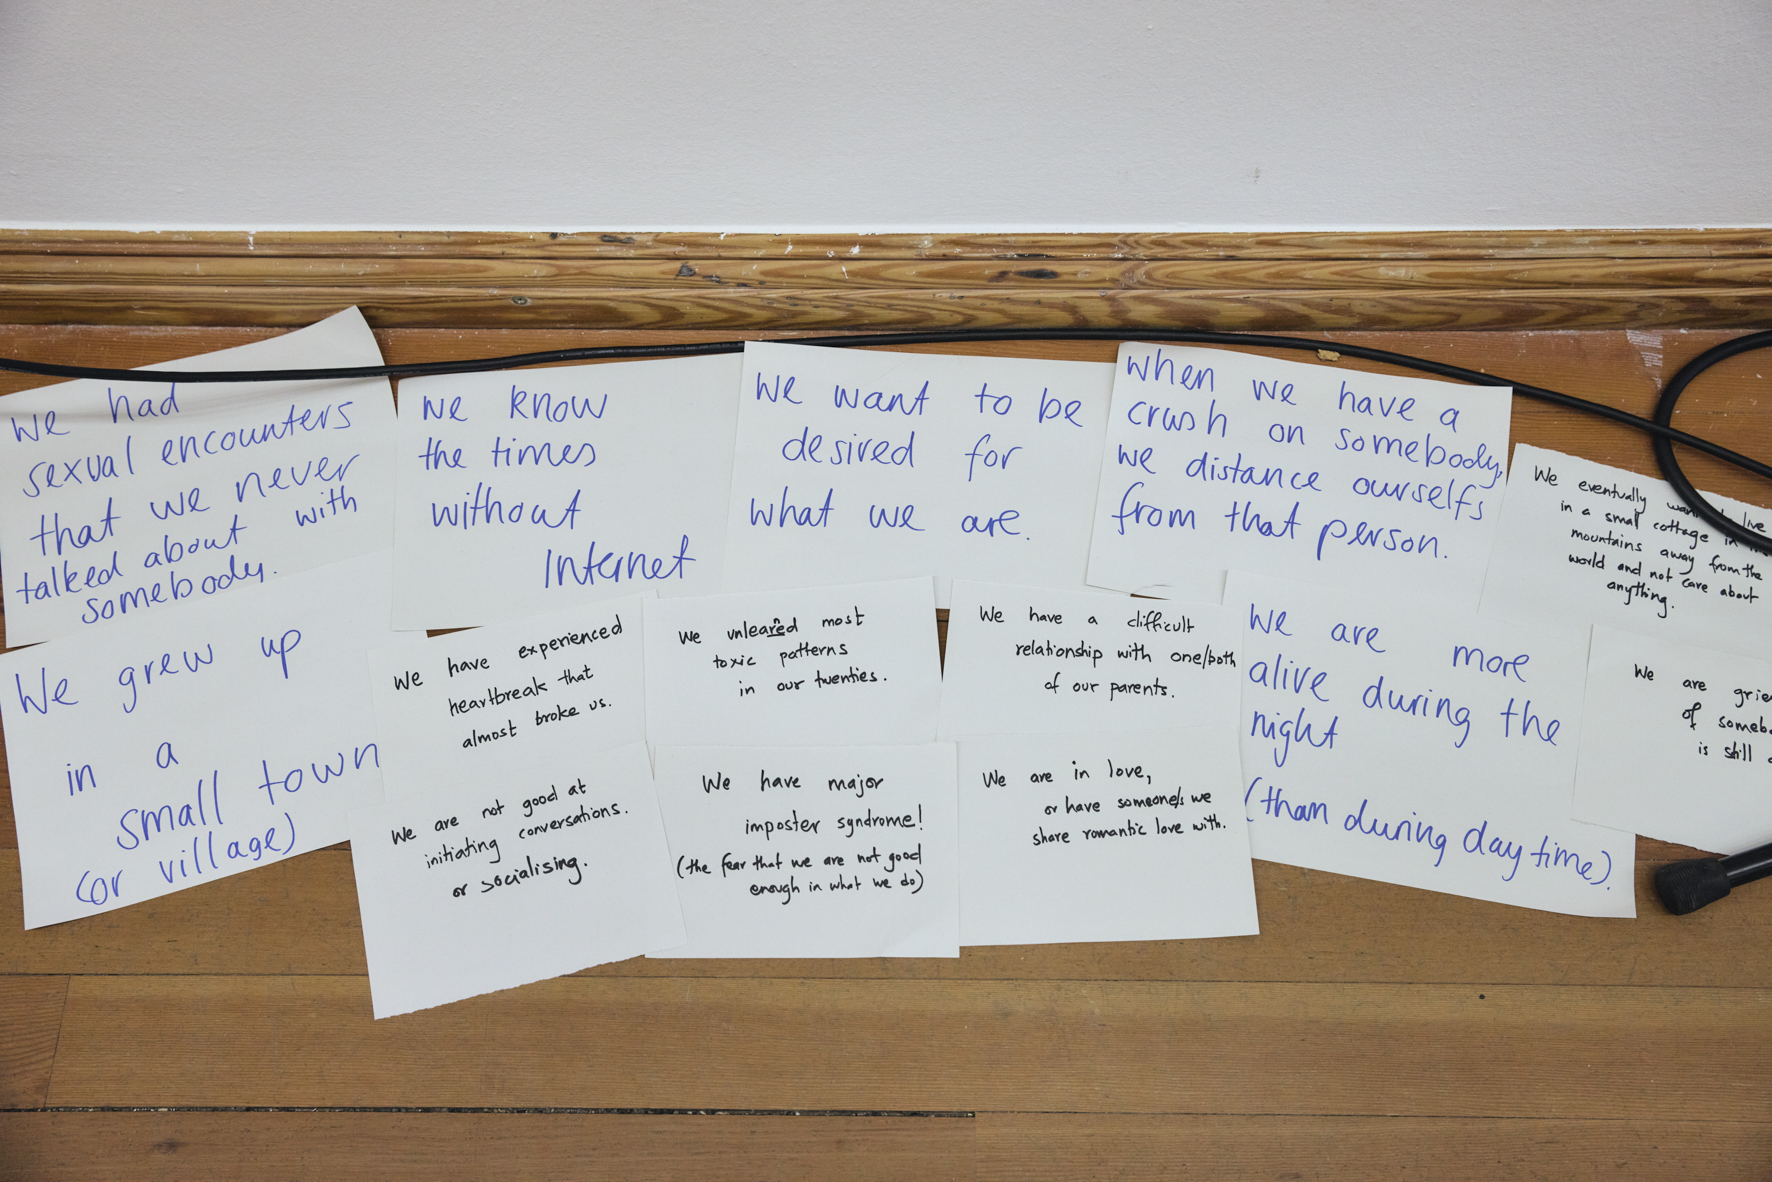 Eine Sammlung von Zetteln auf dem Boden, auf denen englische Wörter und Sätze stehen, wie z.B.: Wir sind verletzlich, Wir kennen die Welt ohne Internet etc.